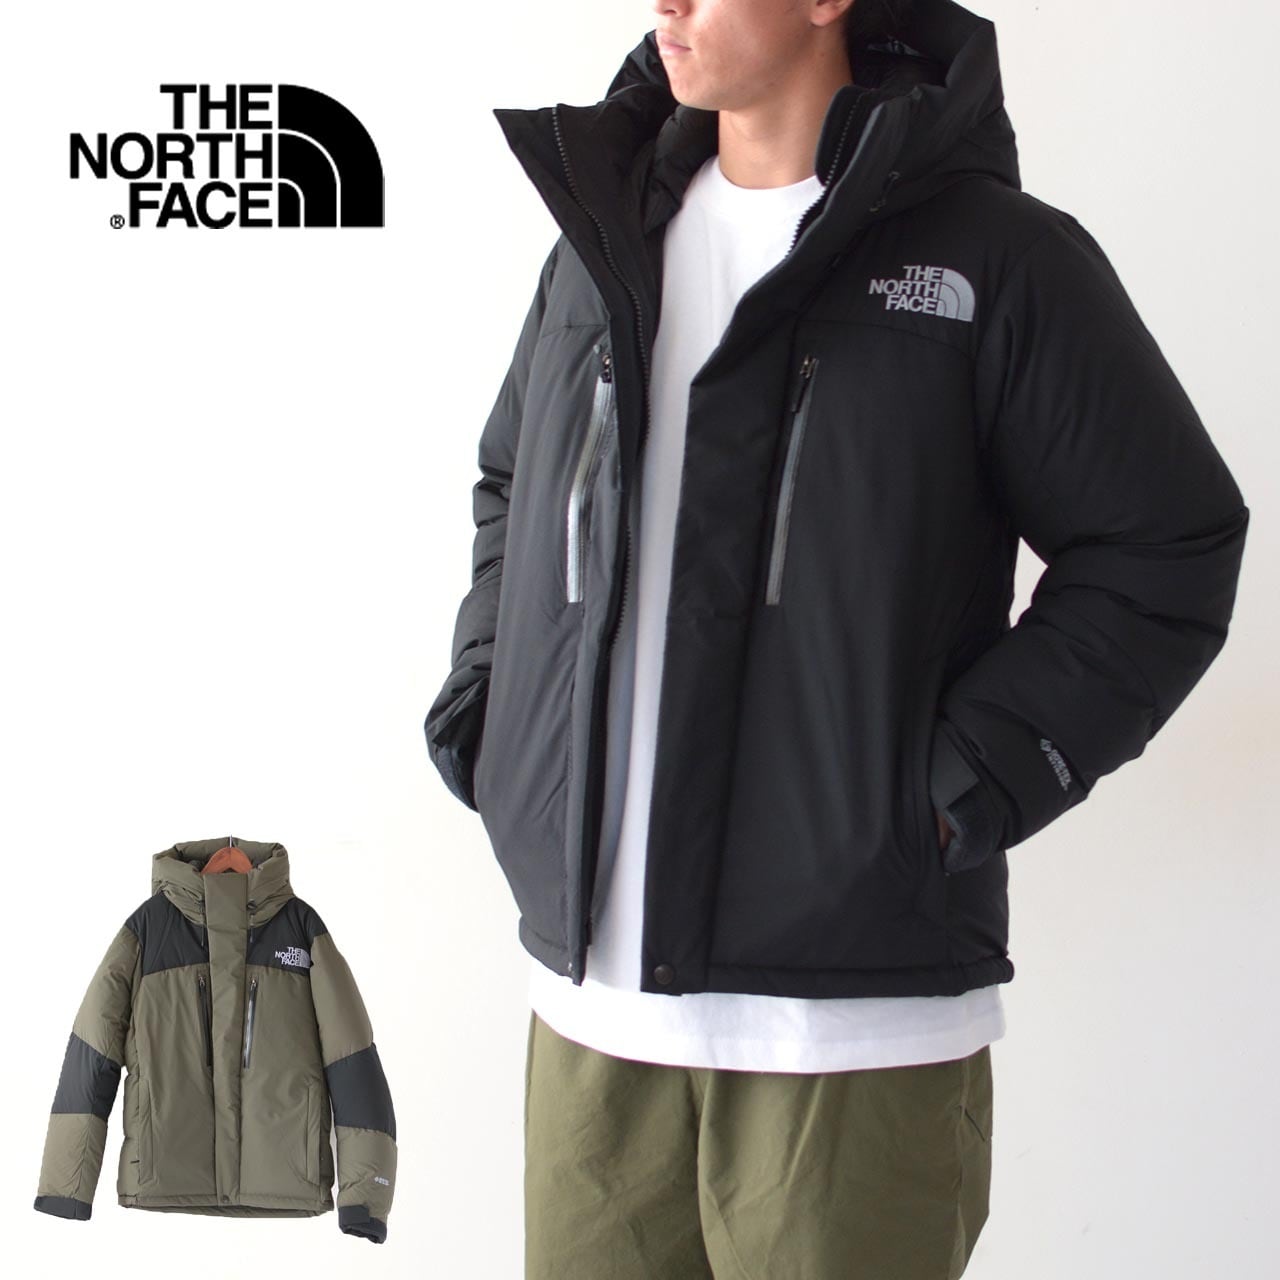 THE NORTH FACE [ザ ノースフェイス正規代理店] Baltro Light Jacket [ND92240] バルトロライトジャケット （ユニセックス）・ダウンジャケット・ナイロンジャケット・防寒・アウトドアジャケット・MEN'S/LADY'S [2022AW] refalt  online store